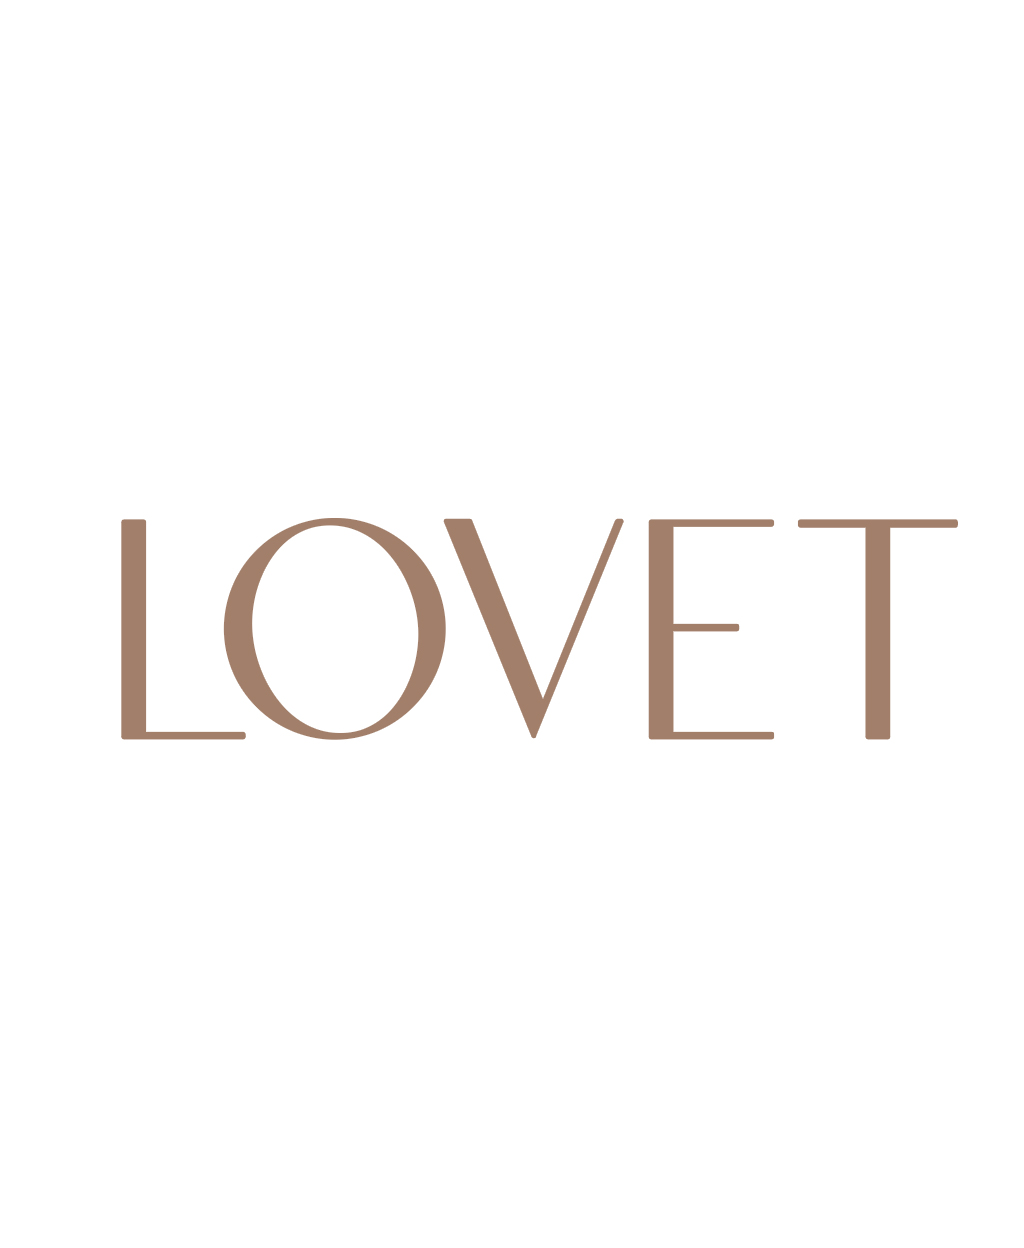 Lovet (s) Pte. Ltd. logo